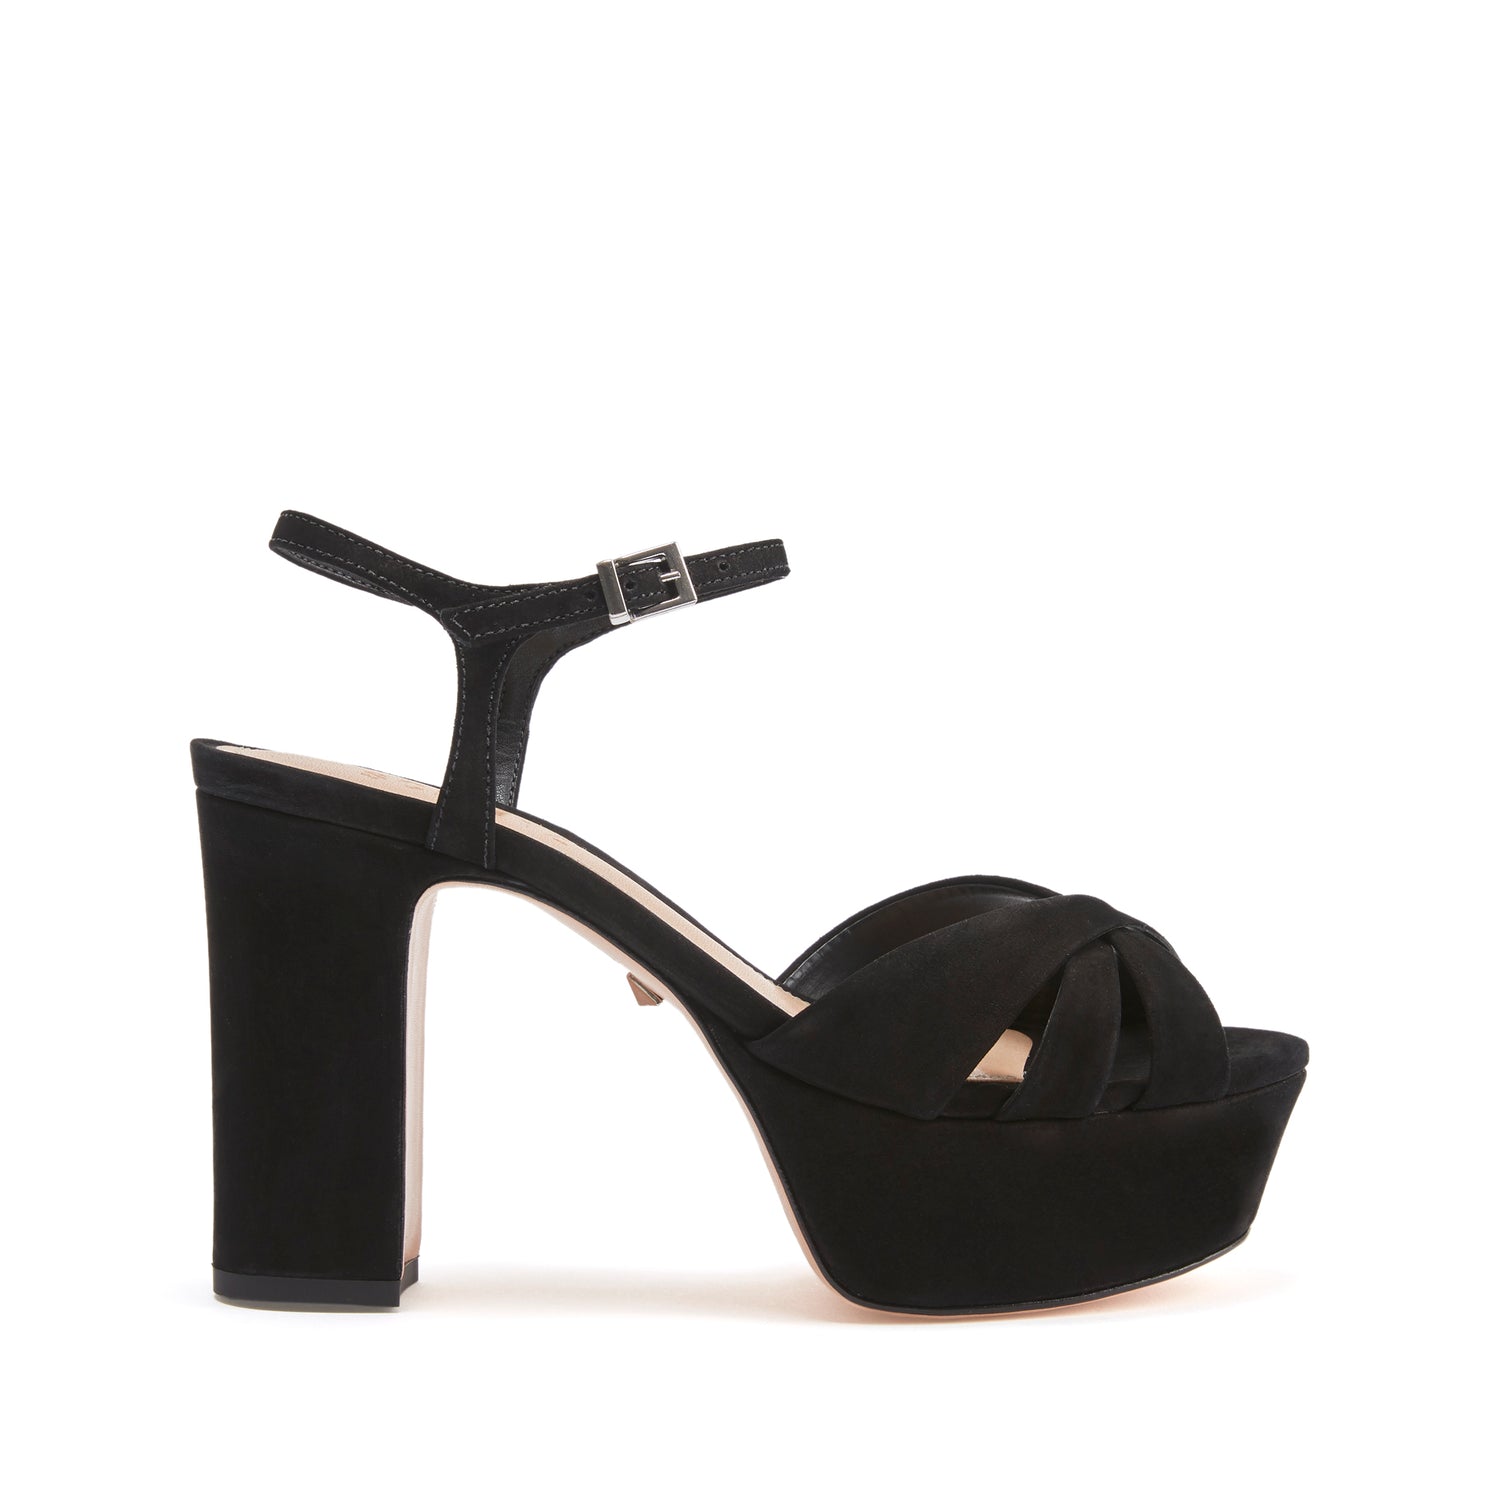 Keefa Sandal Sandals ESSENTIAL 5 Black Nubuck - Schutz Shoes